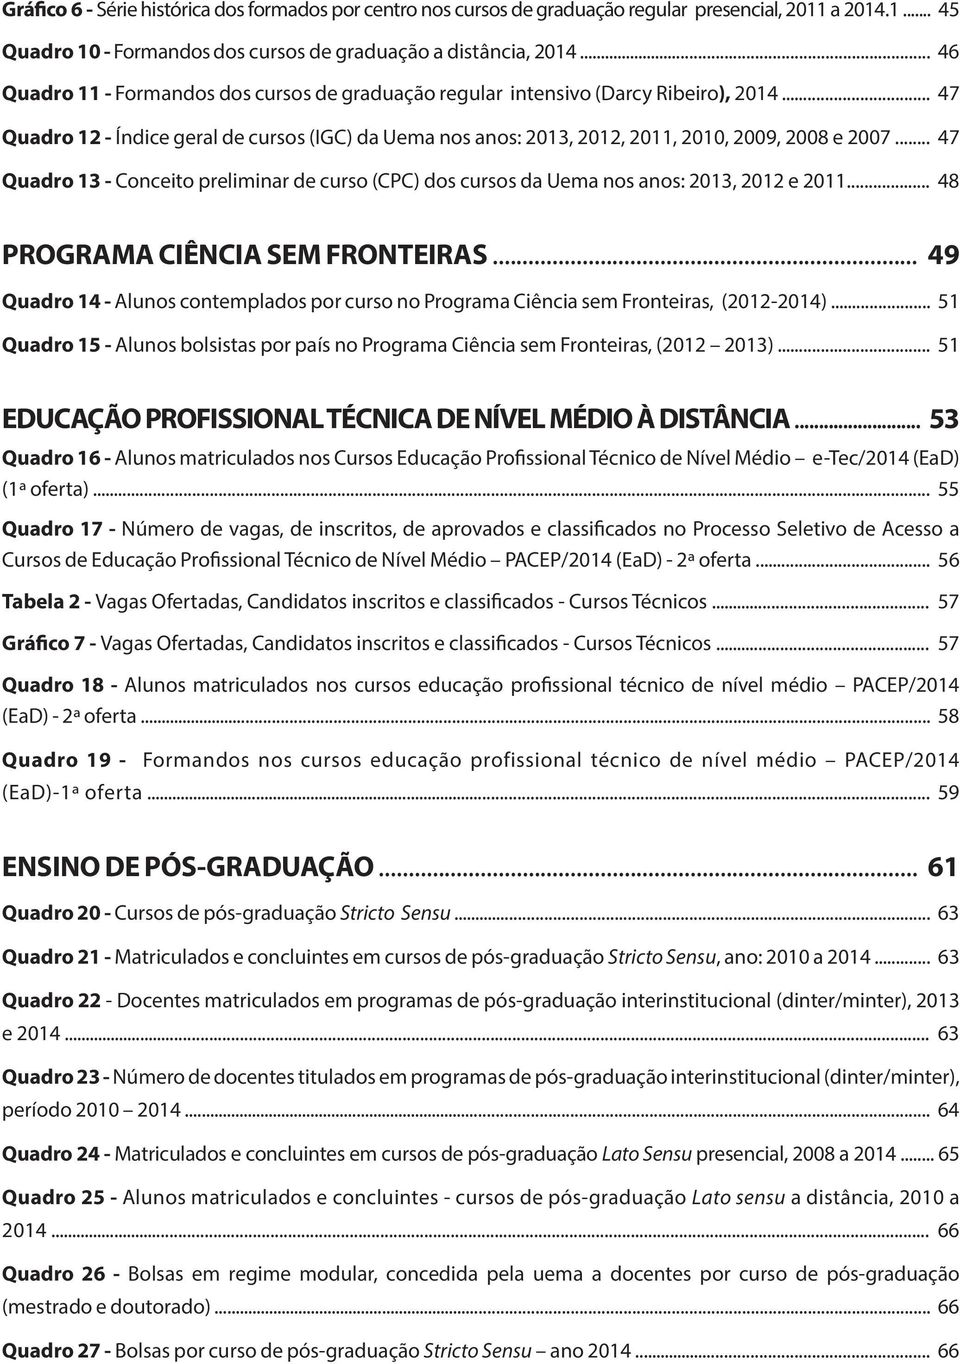 .. 47 Quadro 13 - Conceito preliminar de curso (CPC) dos cursos da Uema nos anos: 2013, 2012 e 2011... 48 PROGRAMA CIÊNCIA SEM FRONTEIRAS.